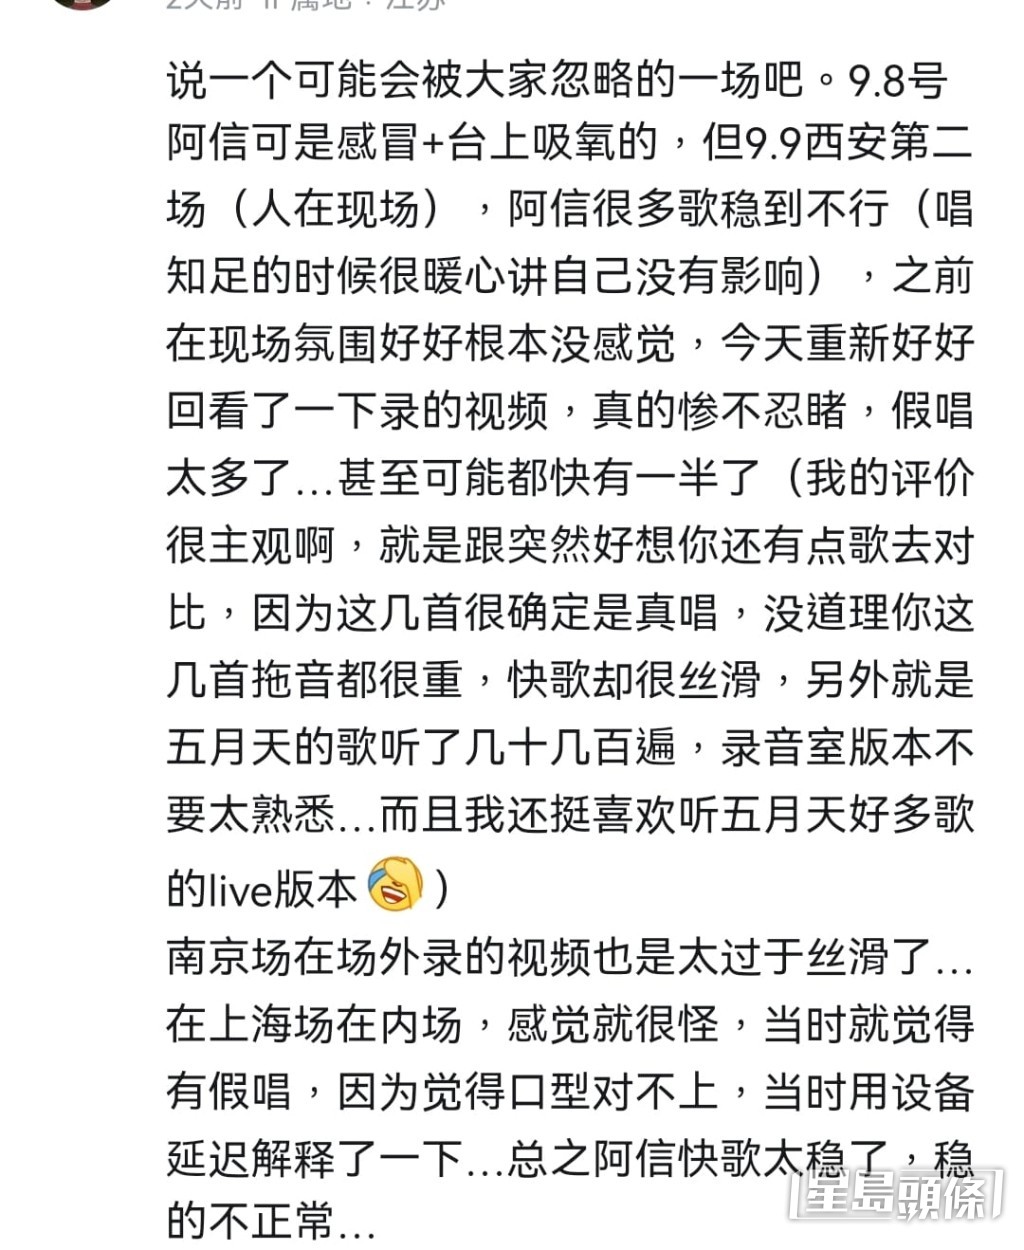 上海场歌迷亦现身表示阿信唱快歌“稳得不正常”、“口型对不上”。